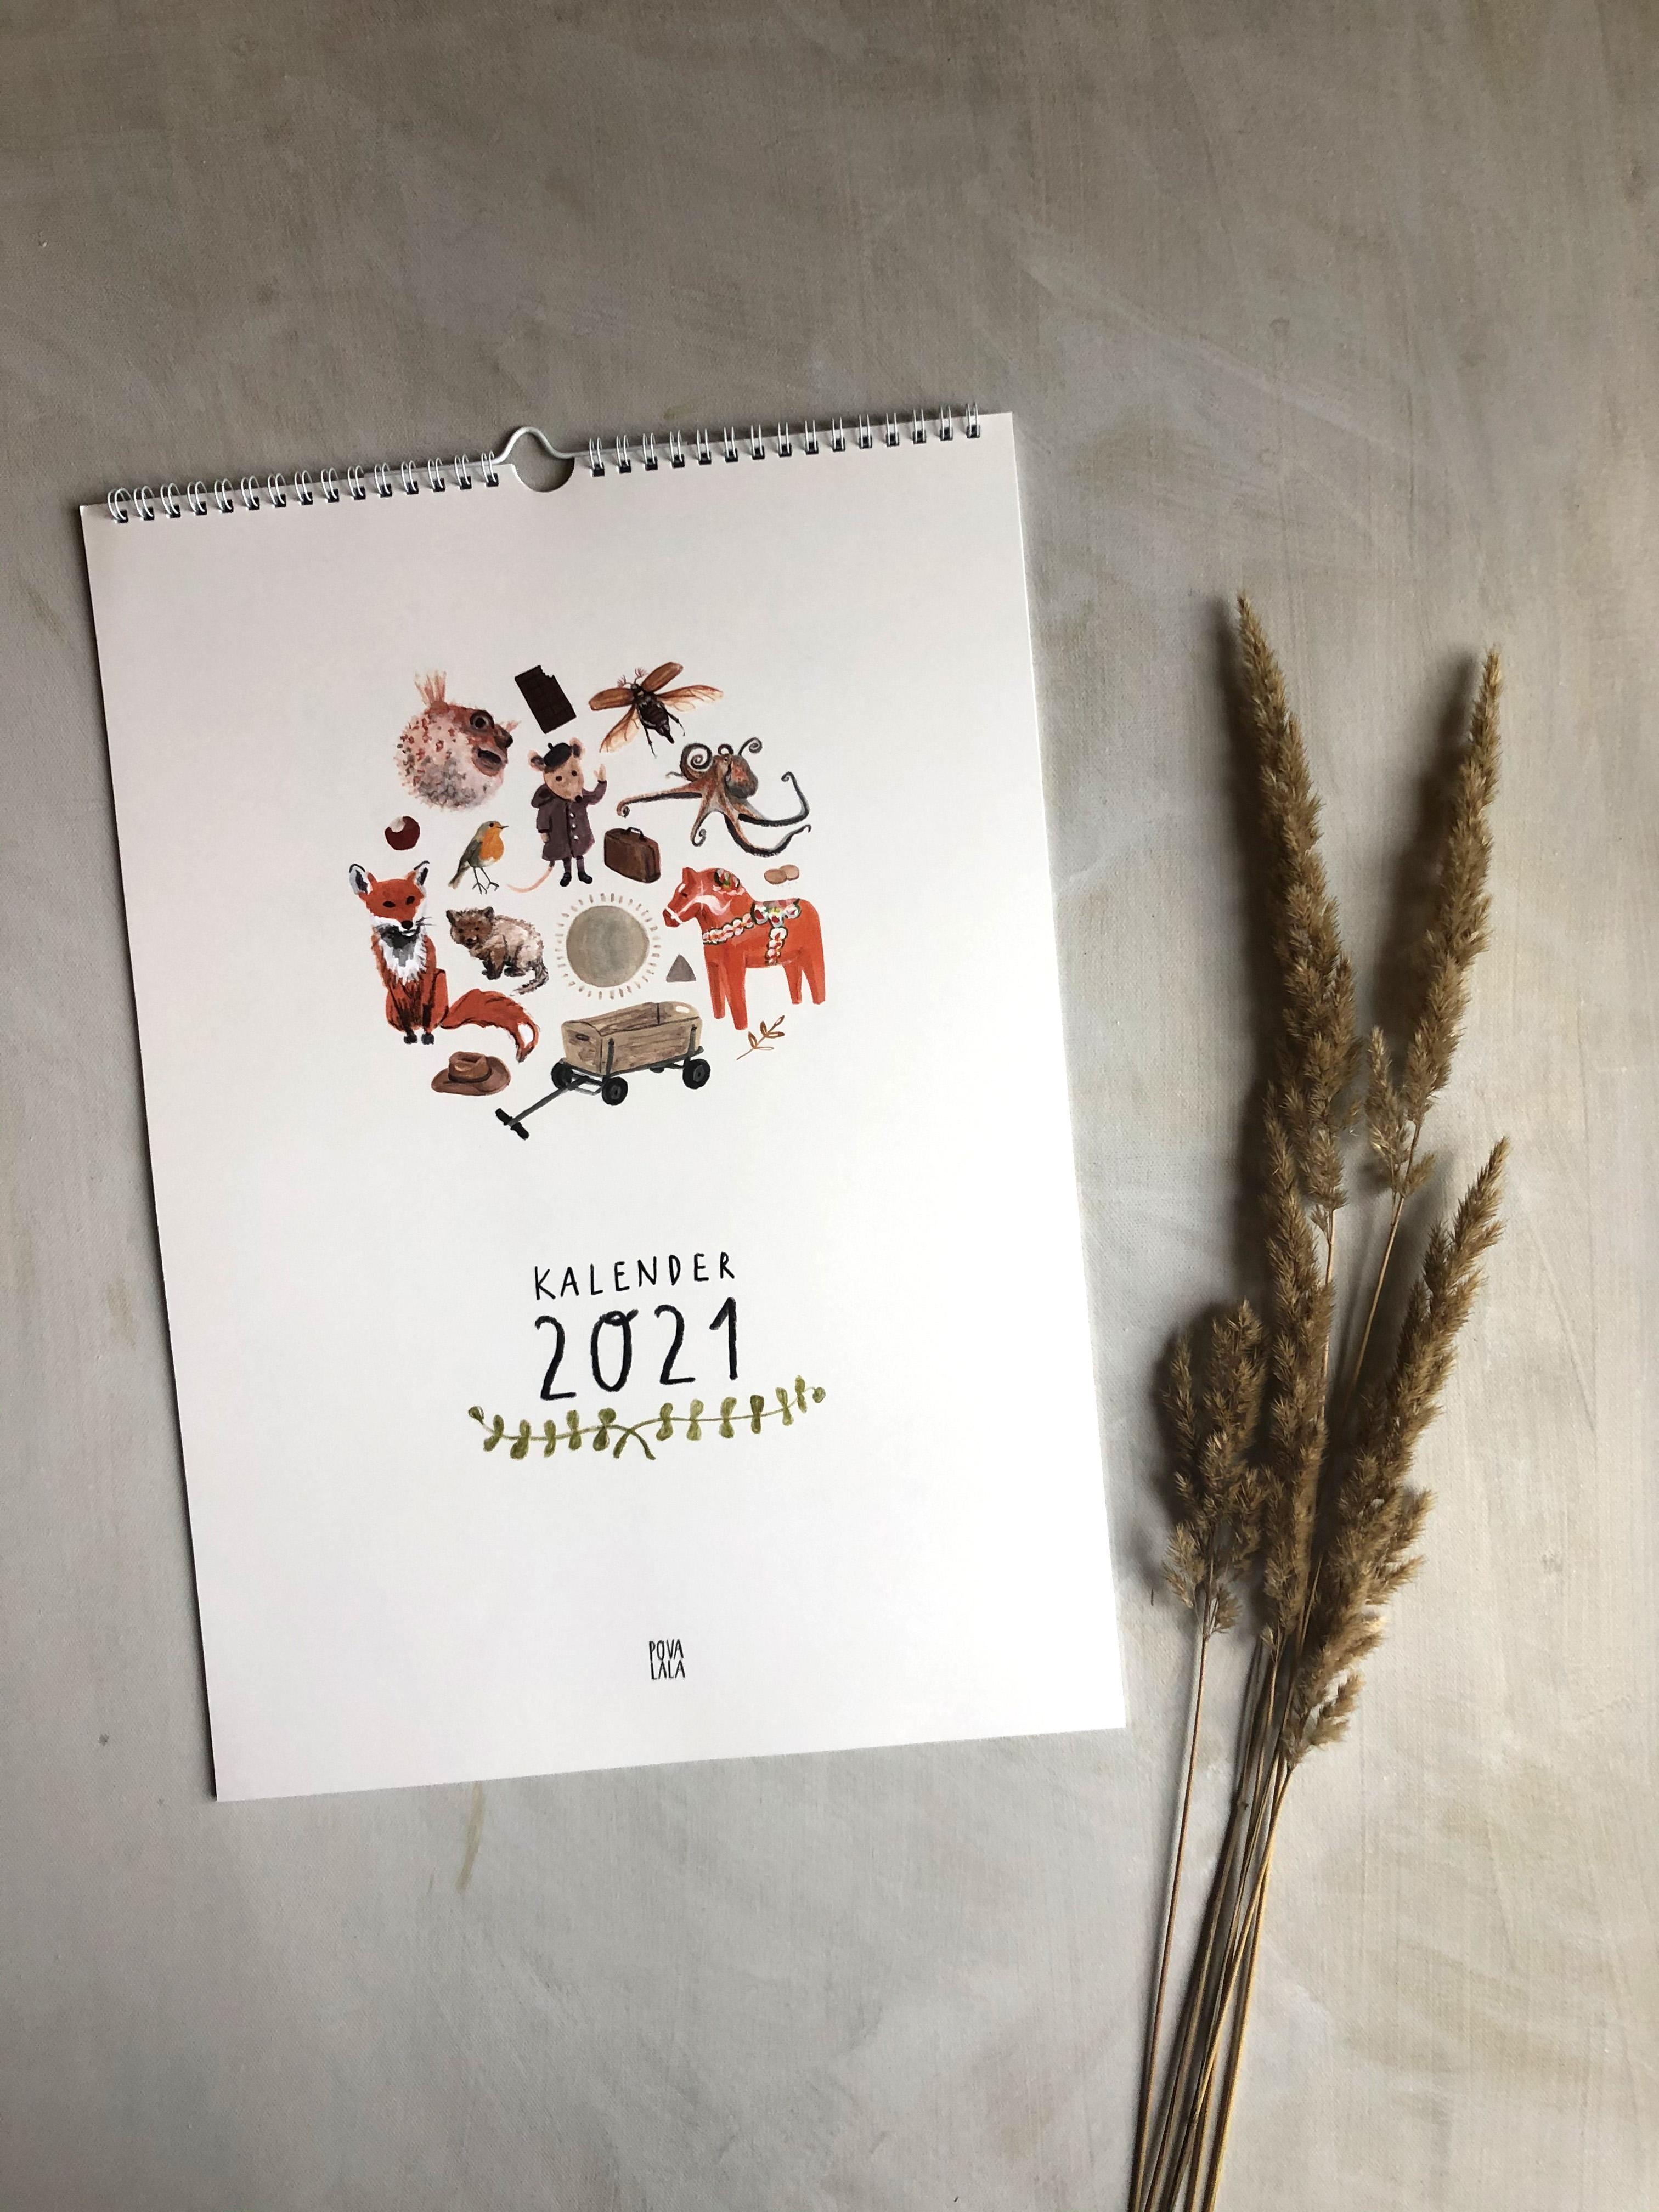 Der Kalender 2021 ist da!
#kalender #kinderzimmer #kidsinterior #kidsroom #kalender2021 #illustration